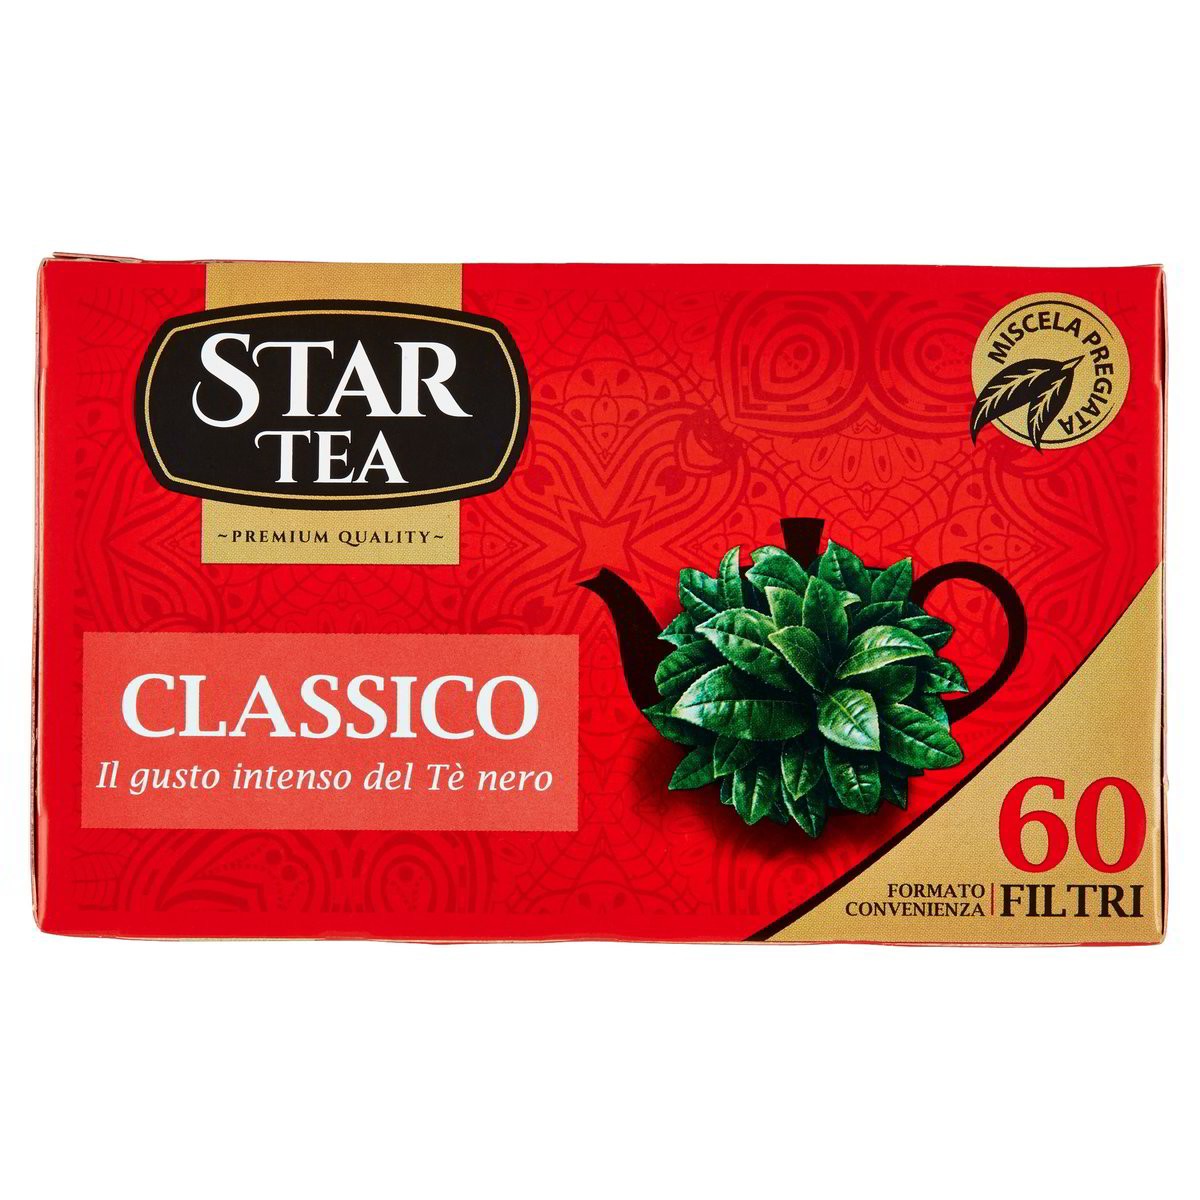 Star Tea Tè classico